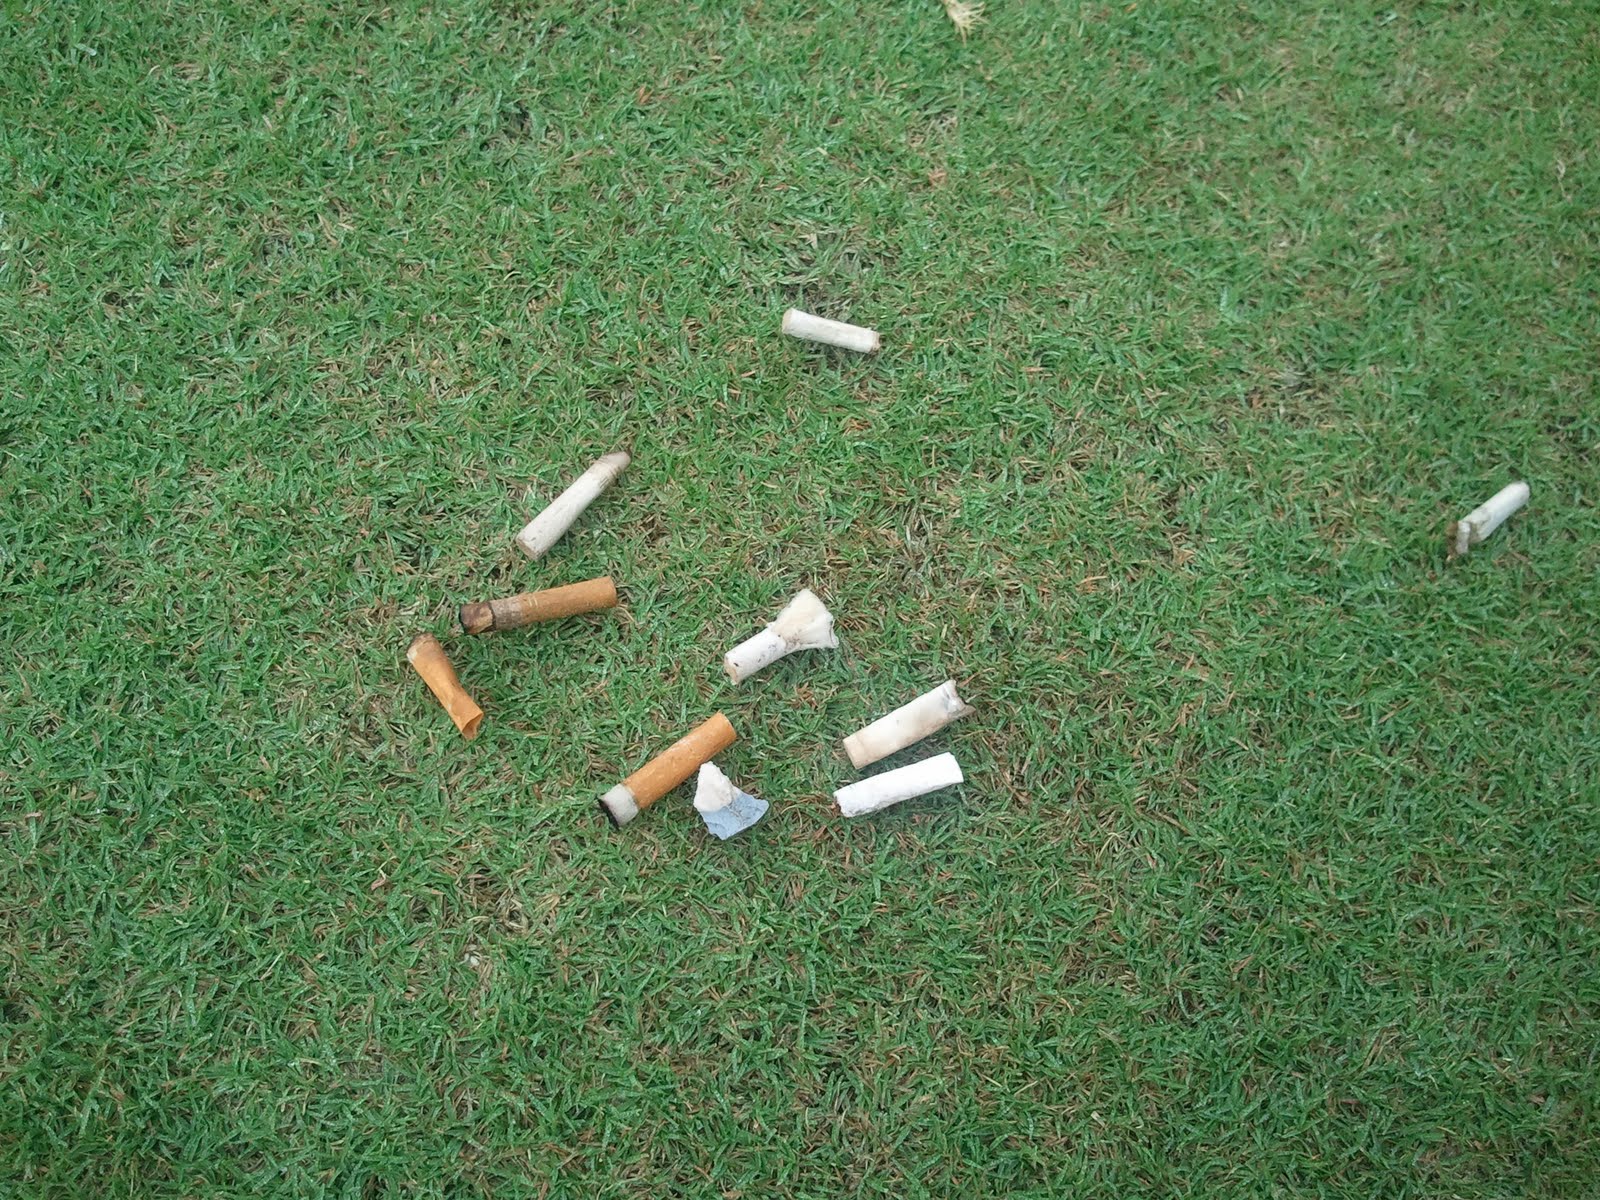 それにしても、ゴルフ場でのタバコのマナーの悪さにはガッカリします